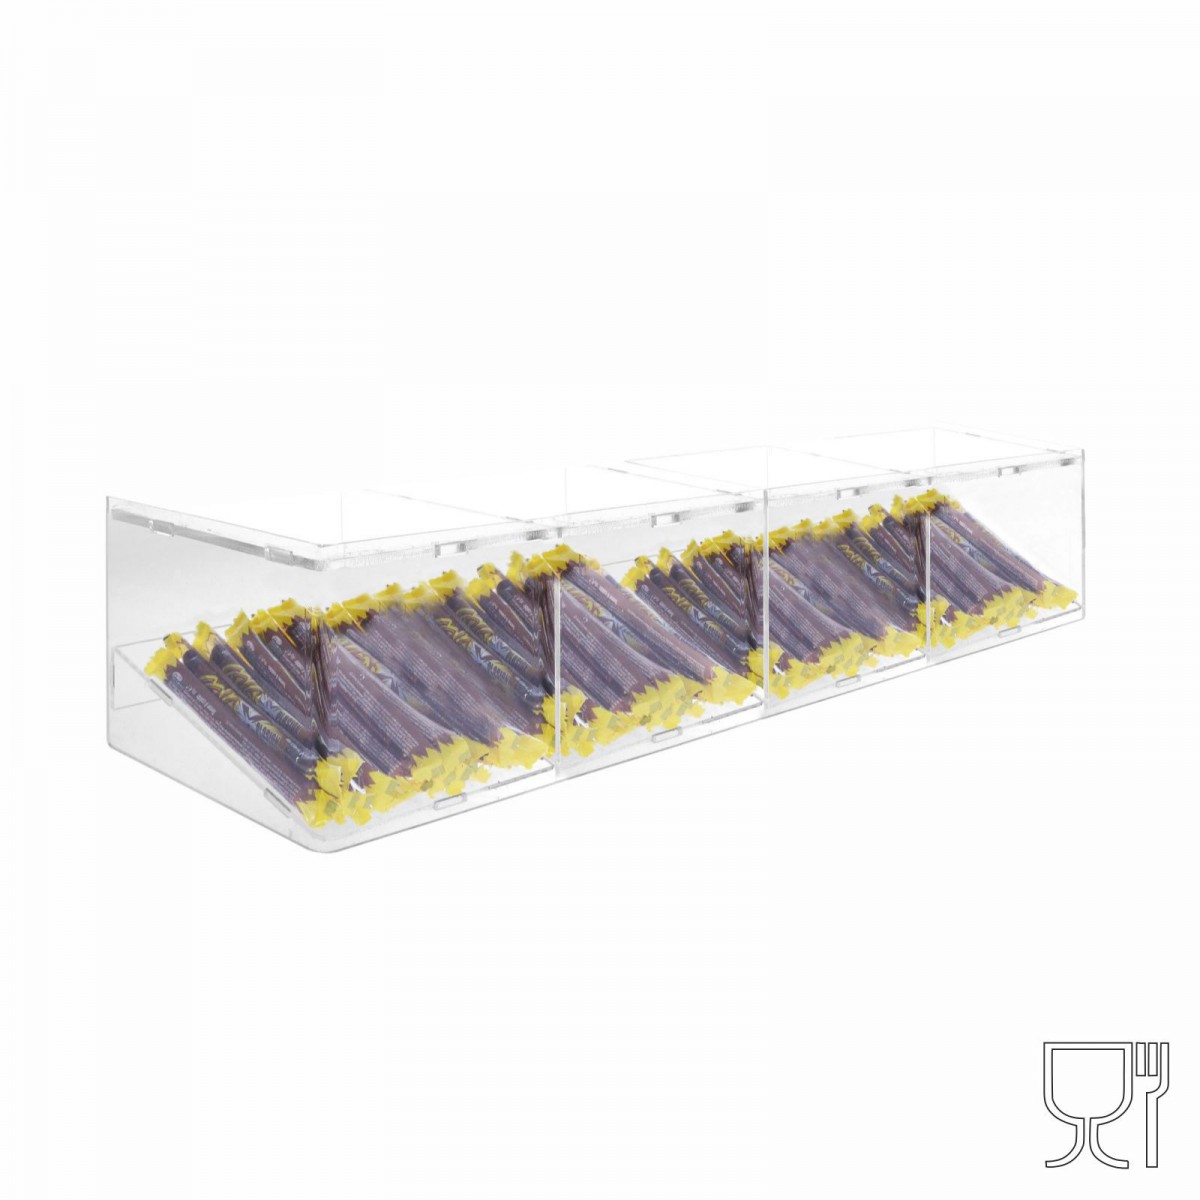 E-502 - Porta caramelle in plexiglass trasparente con Ripiano Inclinato